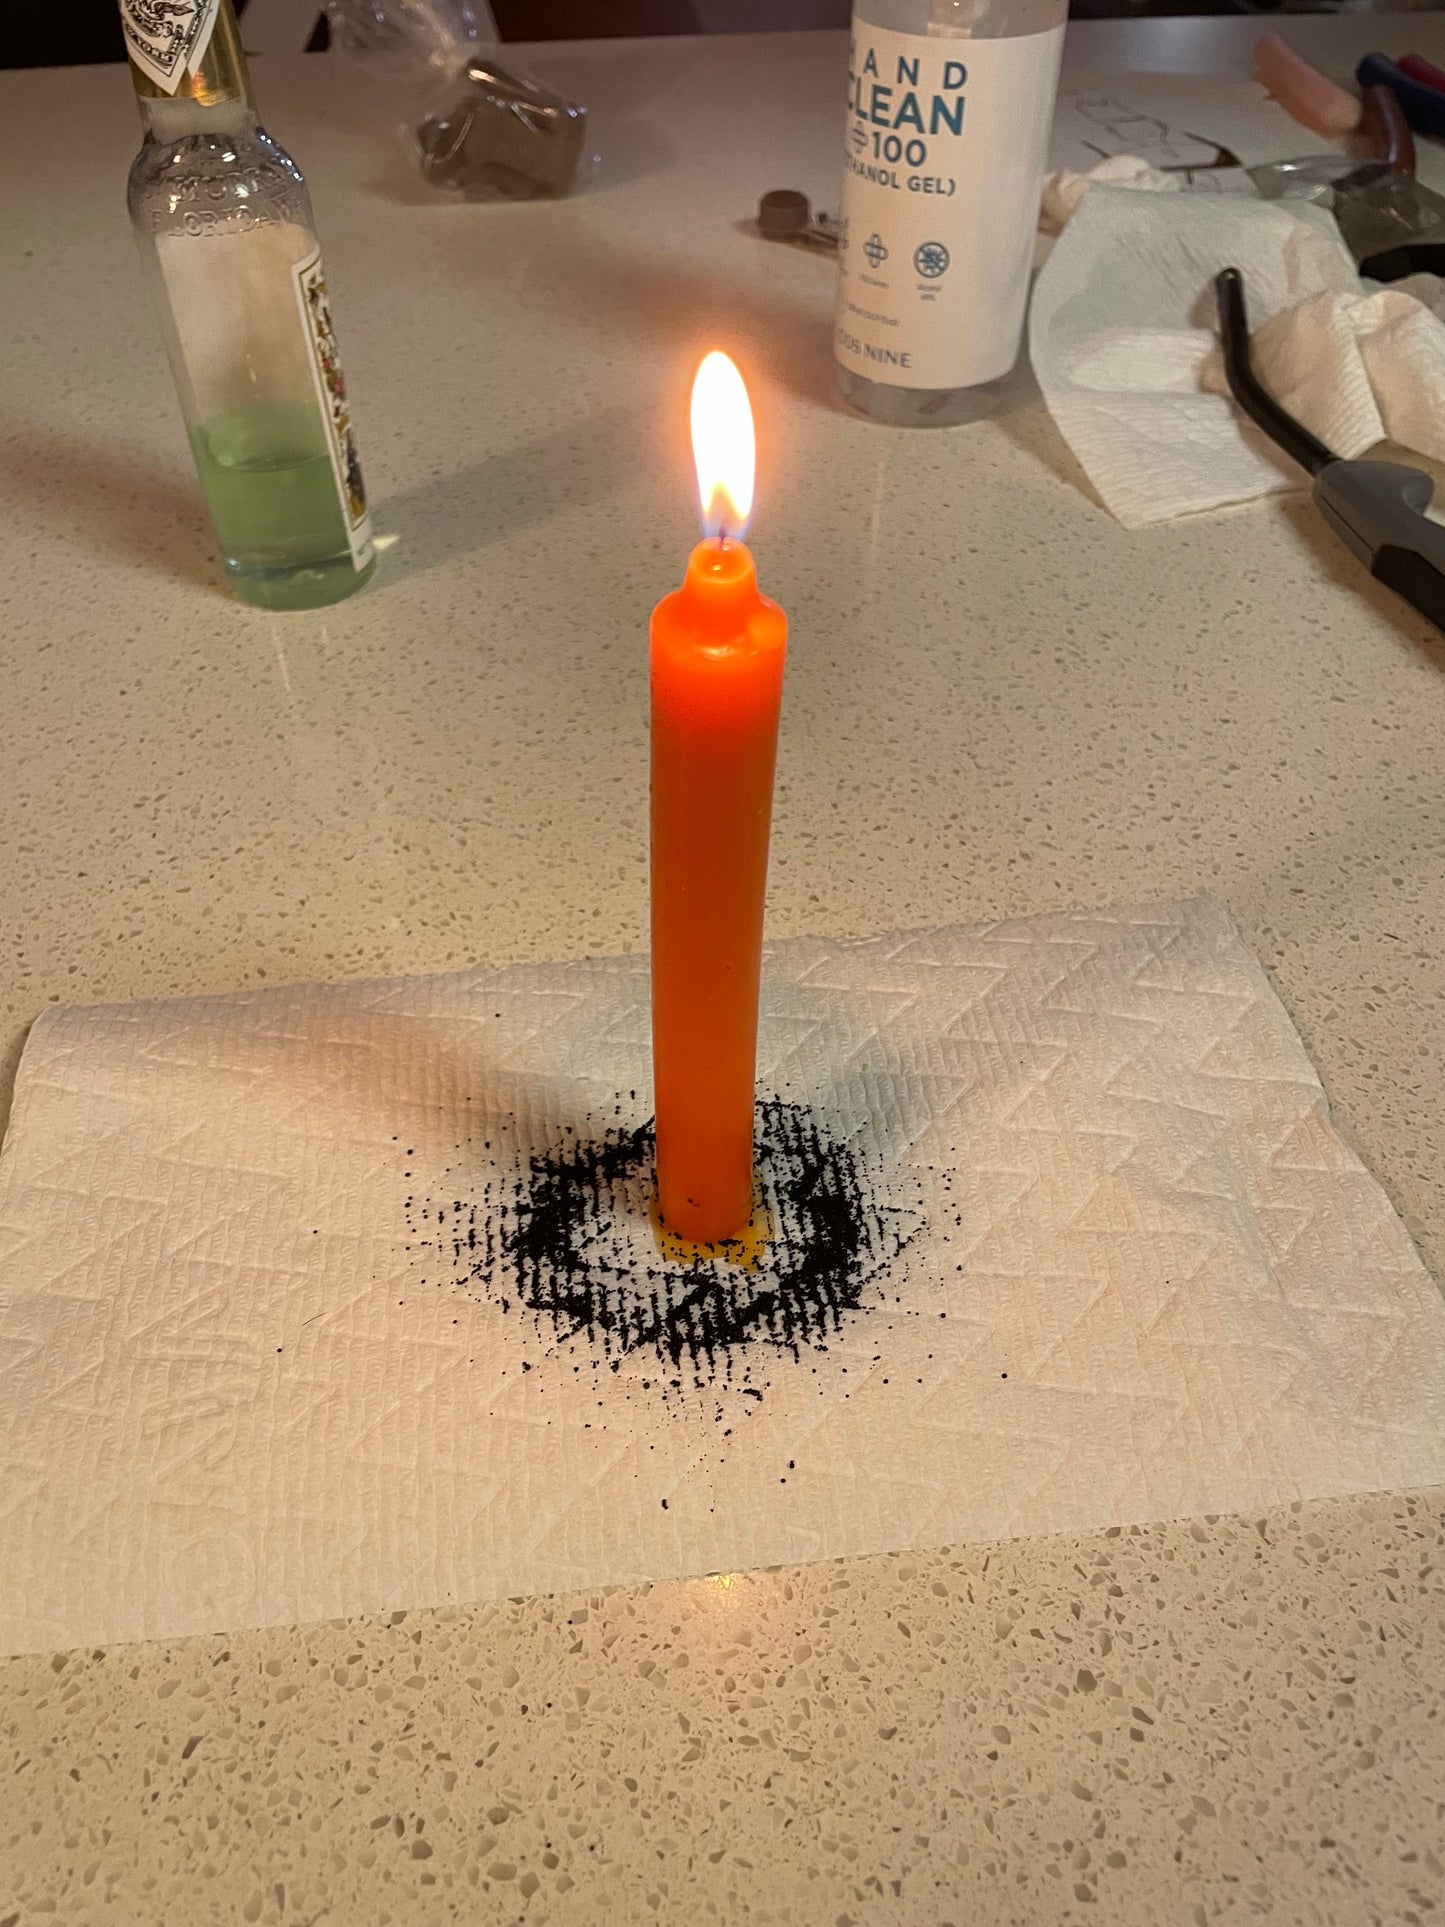 Candle Ritual